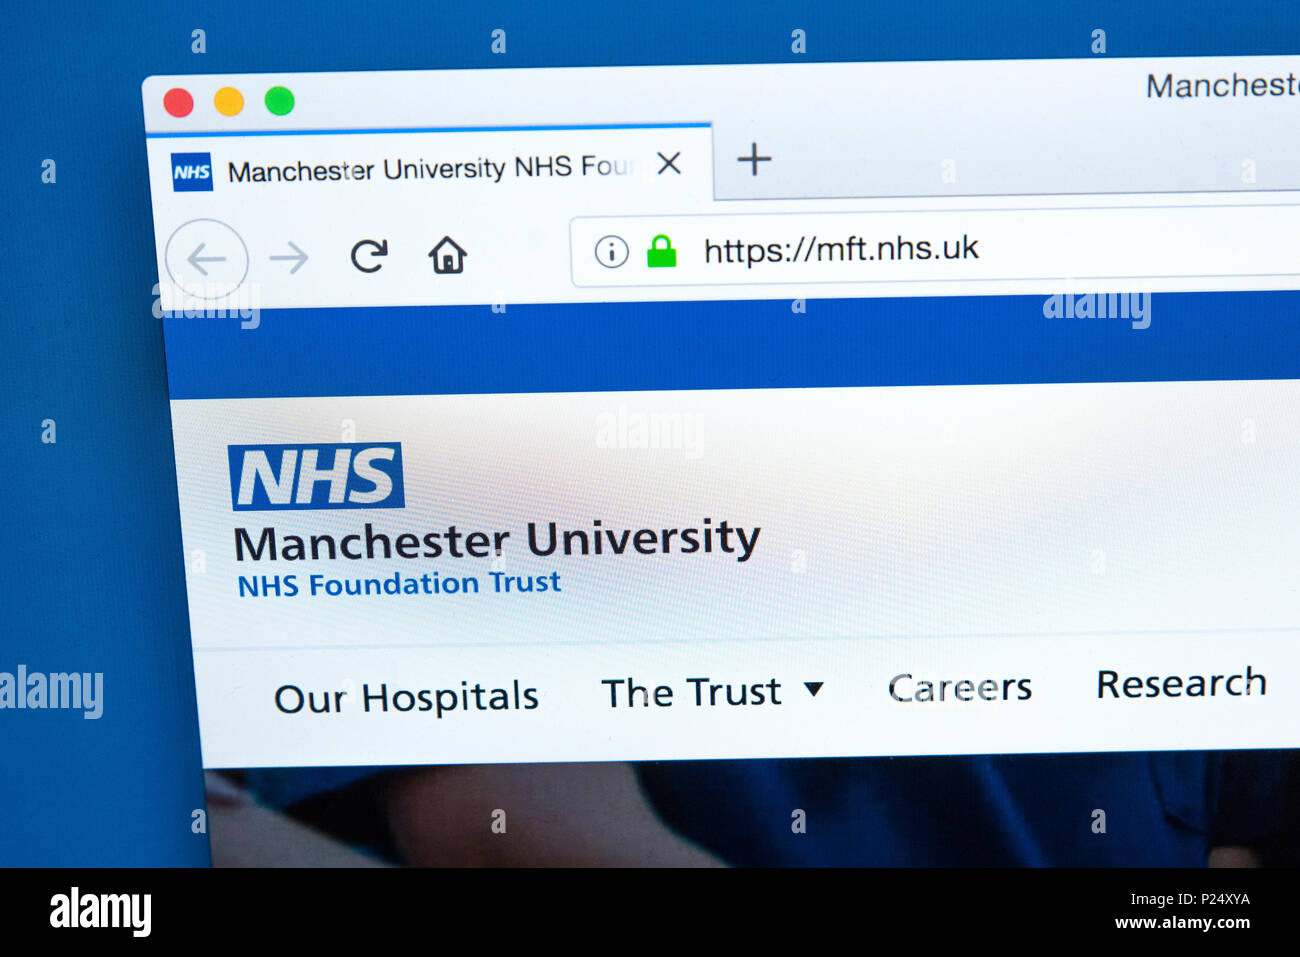 Londres, UK - 5 mars 2018 : La page d'accueil du site web officiel de la Manchester University NHS Foundation Trust, le 5 mars 2018. Banque D'Images